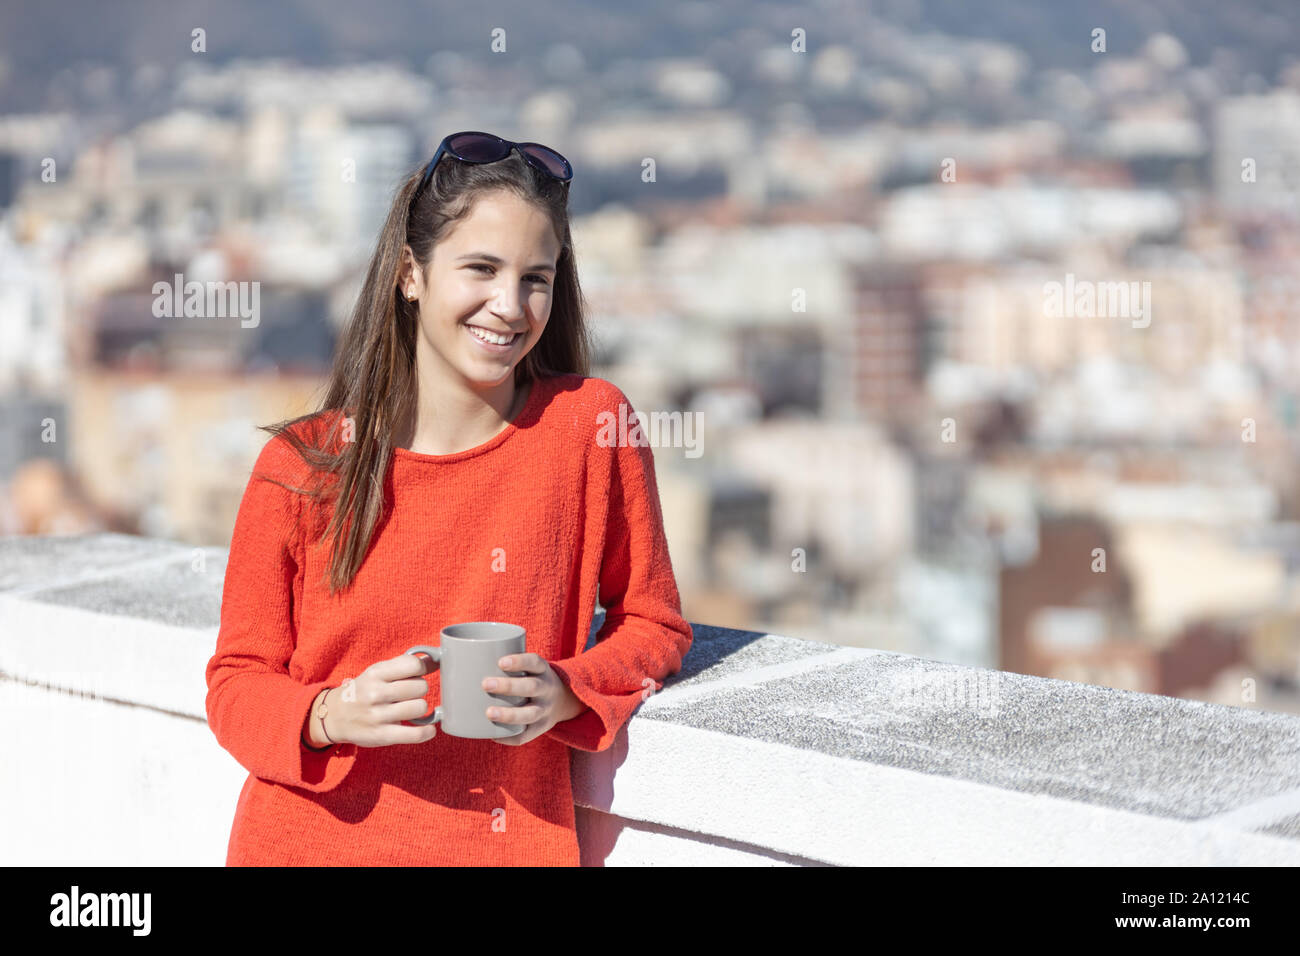 Chica adolescente tomando un café mirando a la cámara en la azotea Stock Photo